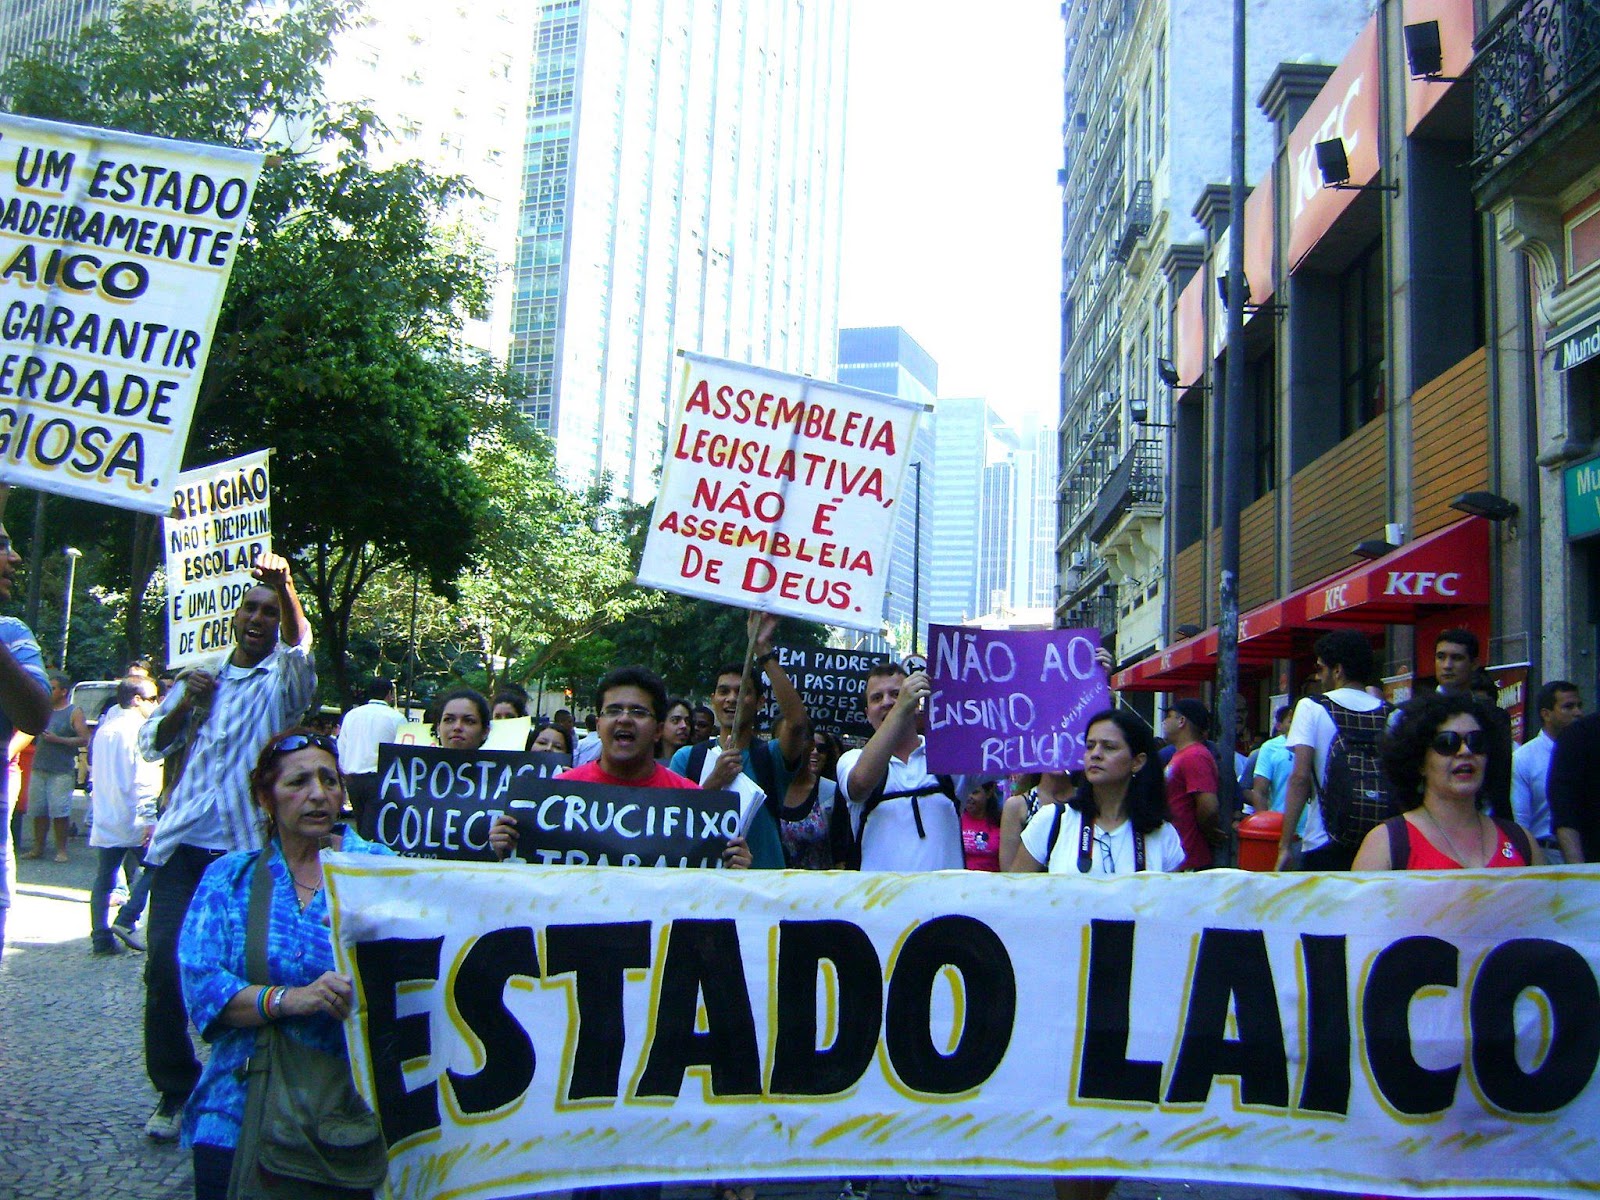 marcha pelo estado laico rj 2011 2